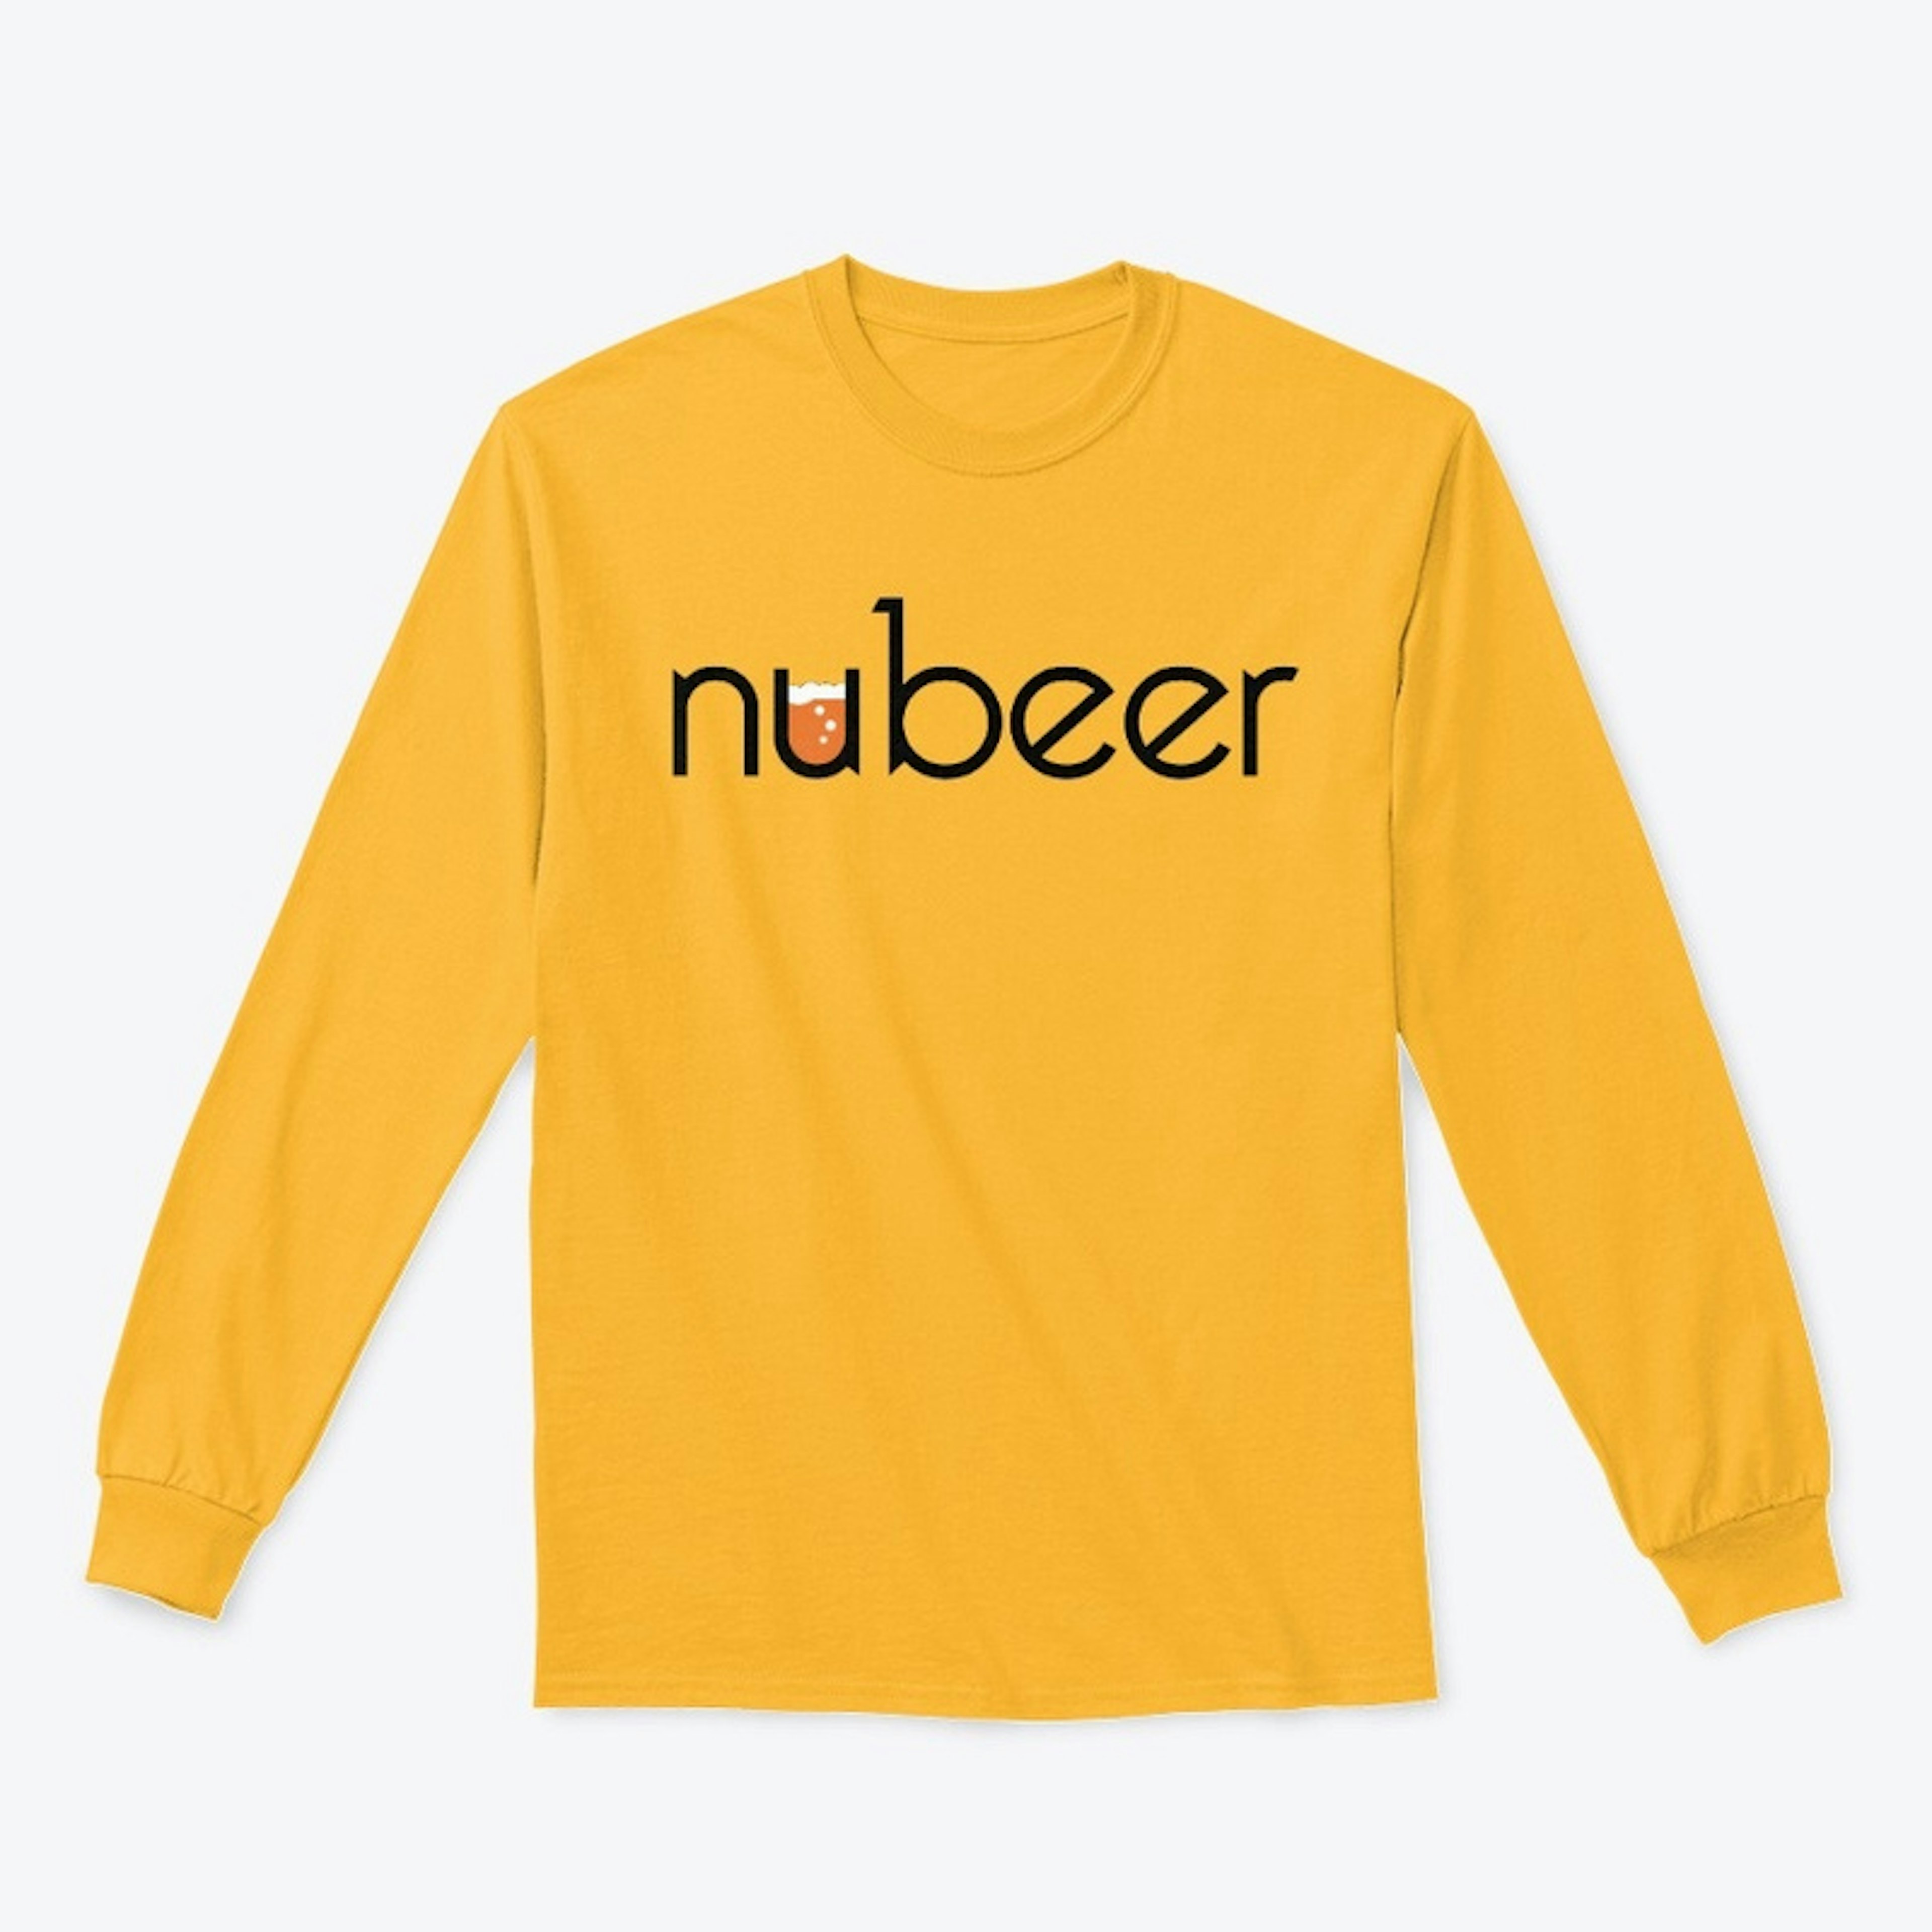 nubeer text logo